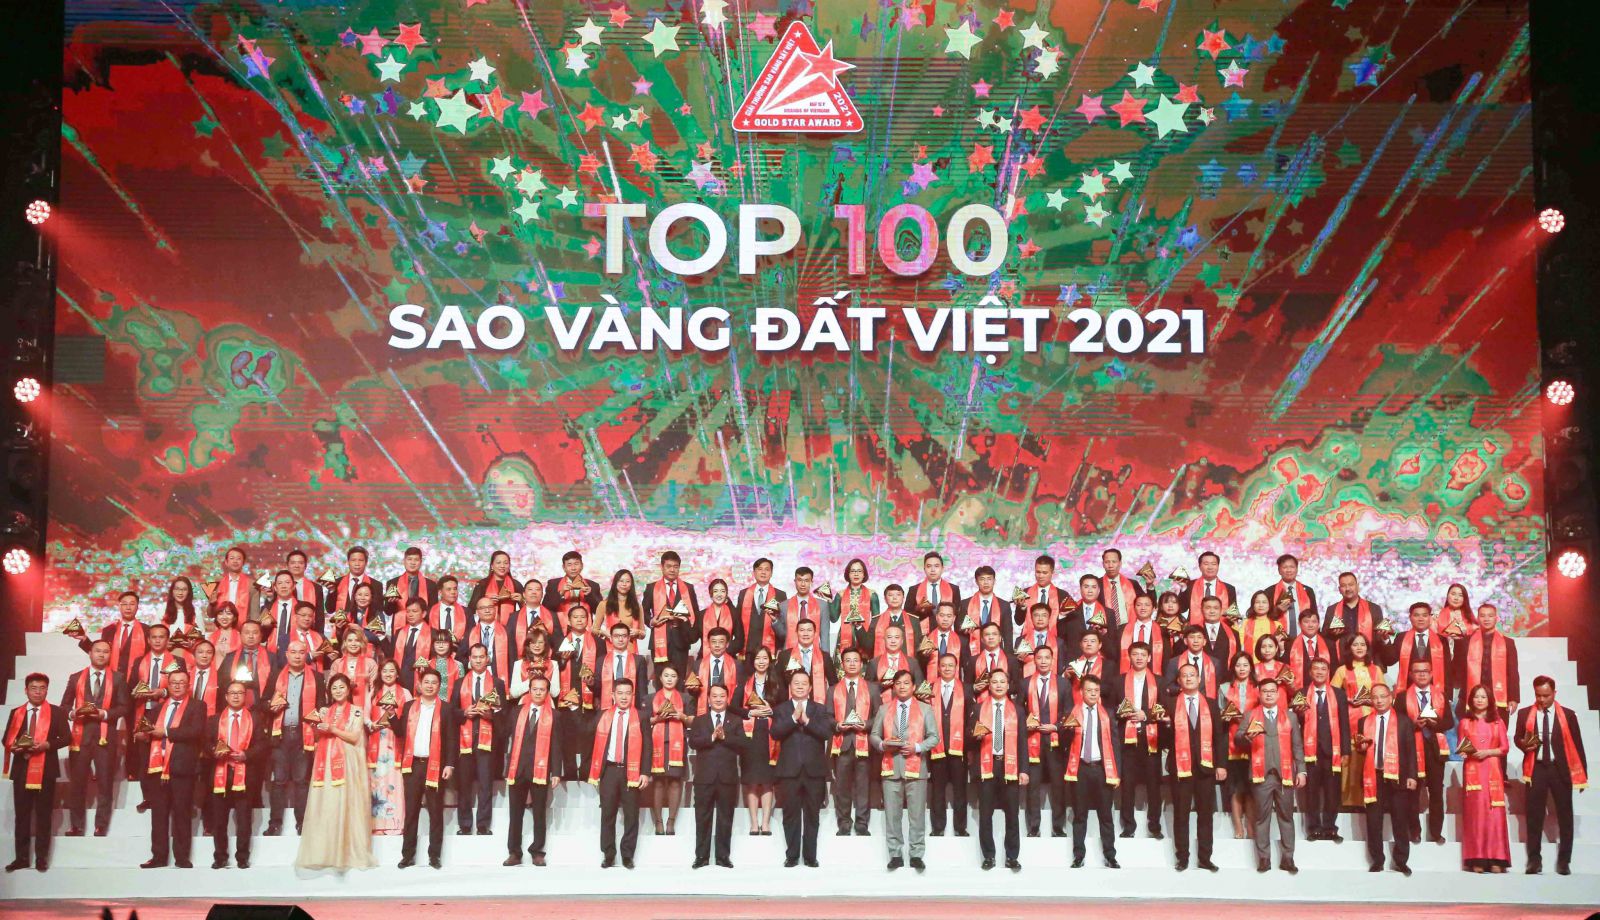 tổng doanh thu của 200 doanh nghiệp có thương hiệu đạt giải Sao Vàng đất Việt 2021 là trên 747 nghìn tỷ đồng, nộp ngân sách trên 40 nghìn tỷ đồng và tạo việc làm cho hơn 450 nghìn lao động.